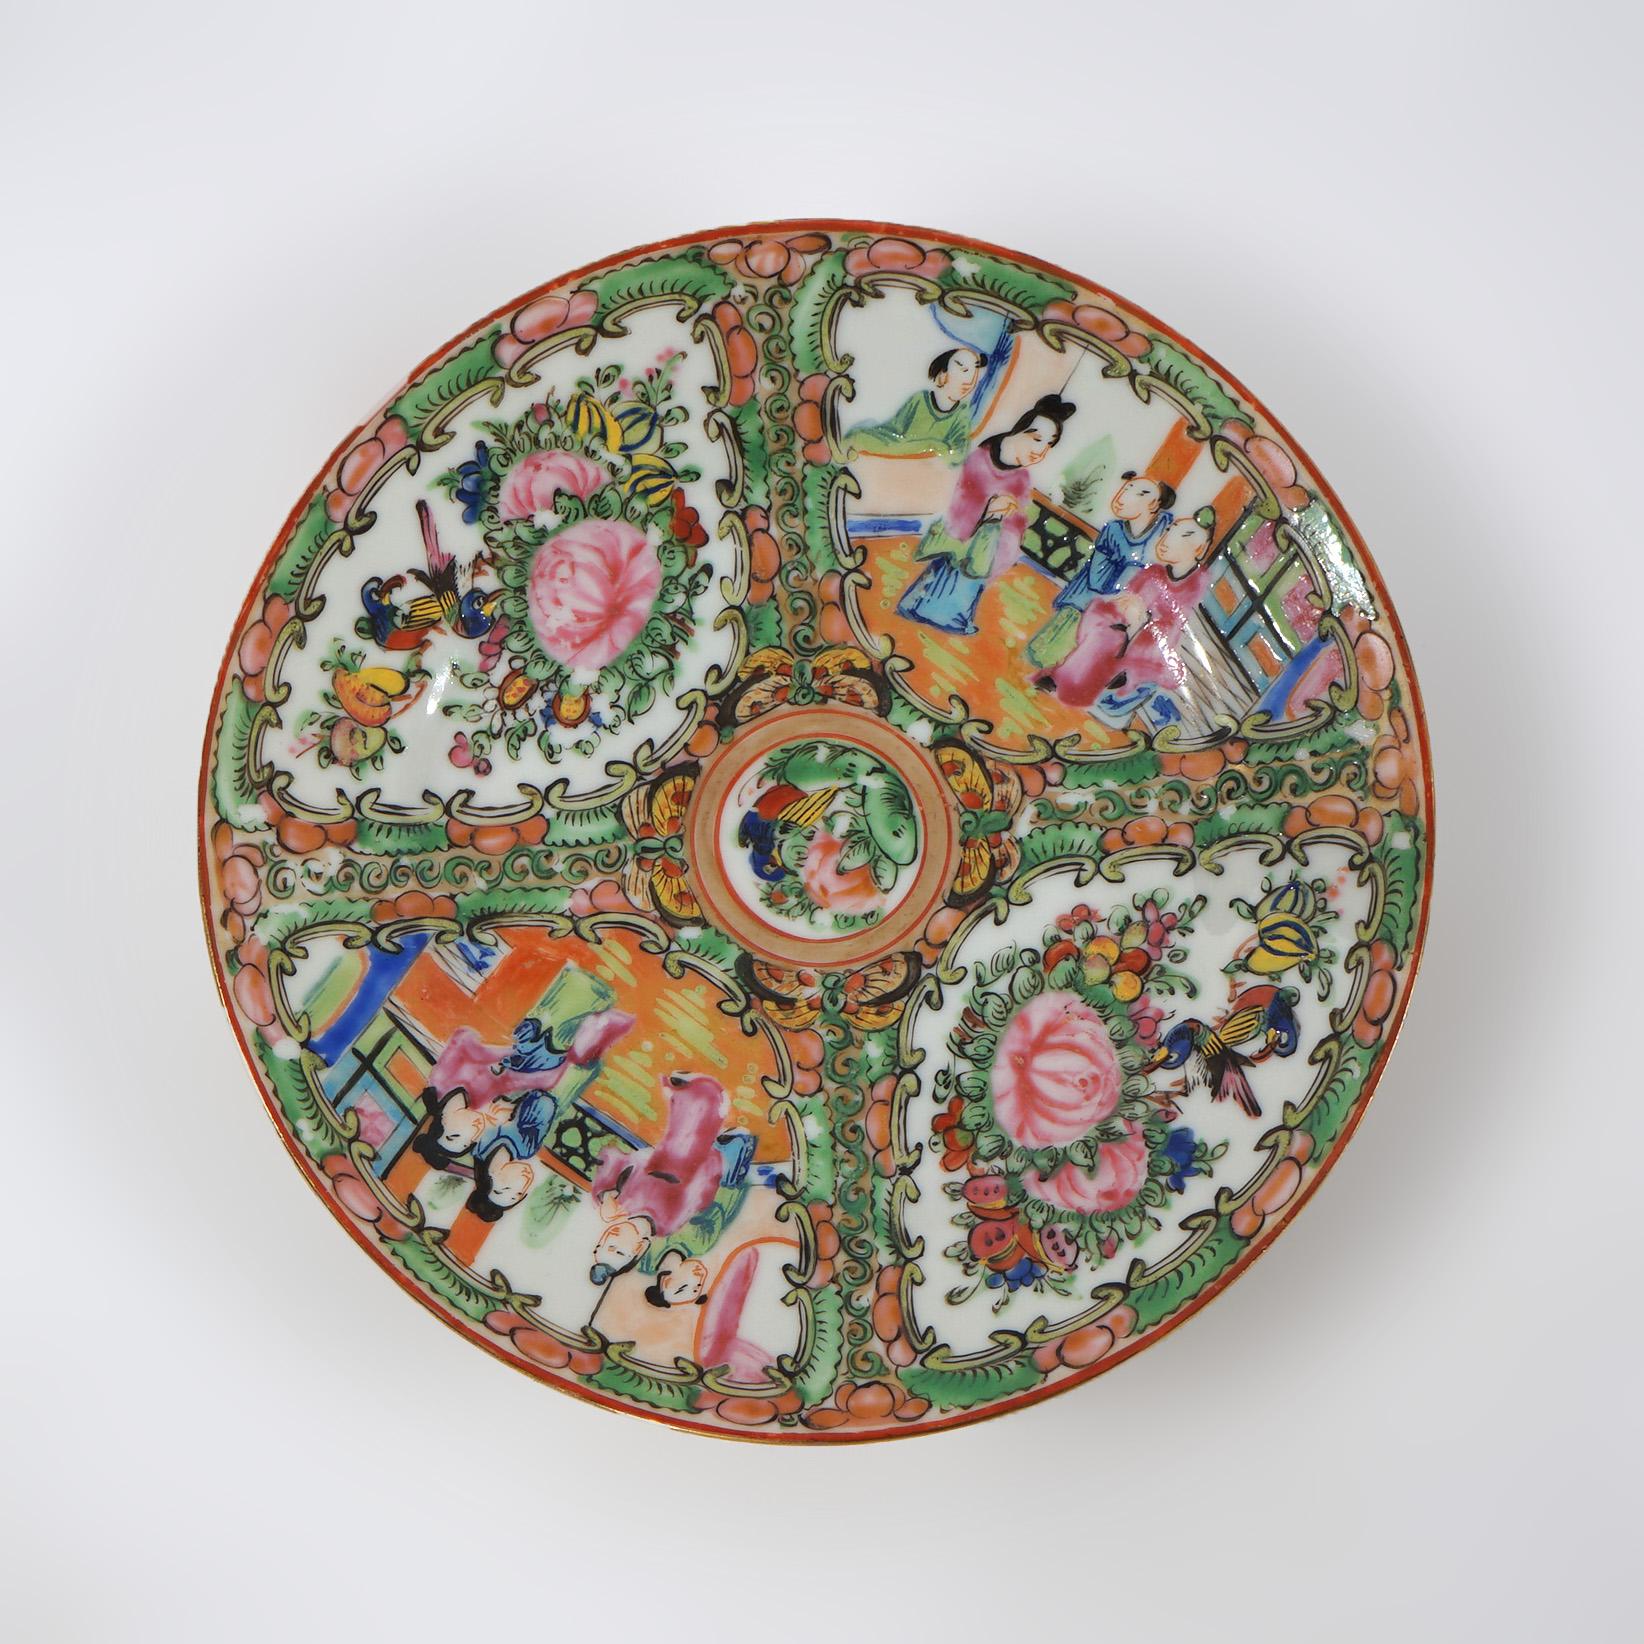 Assiettes anciennes en porcelaine chinoise à médaillon de roses avec réserves ayant des jardins et des scènes de genre C1900

Dimensions - 1 